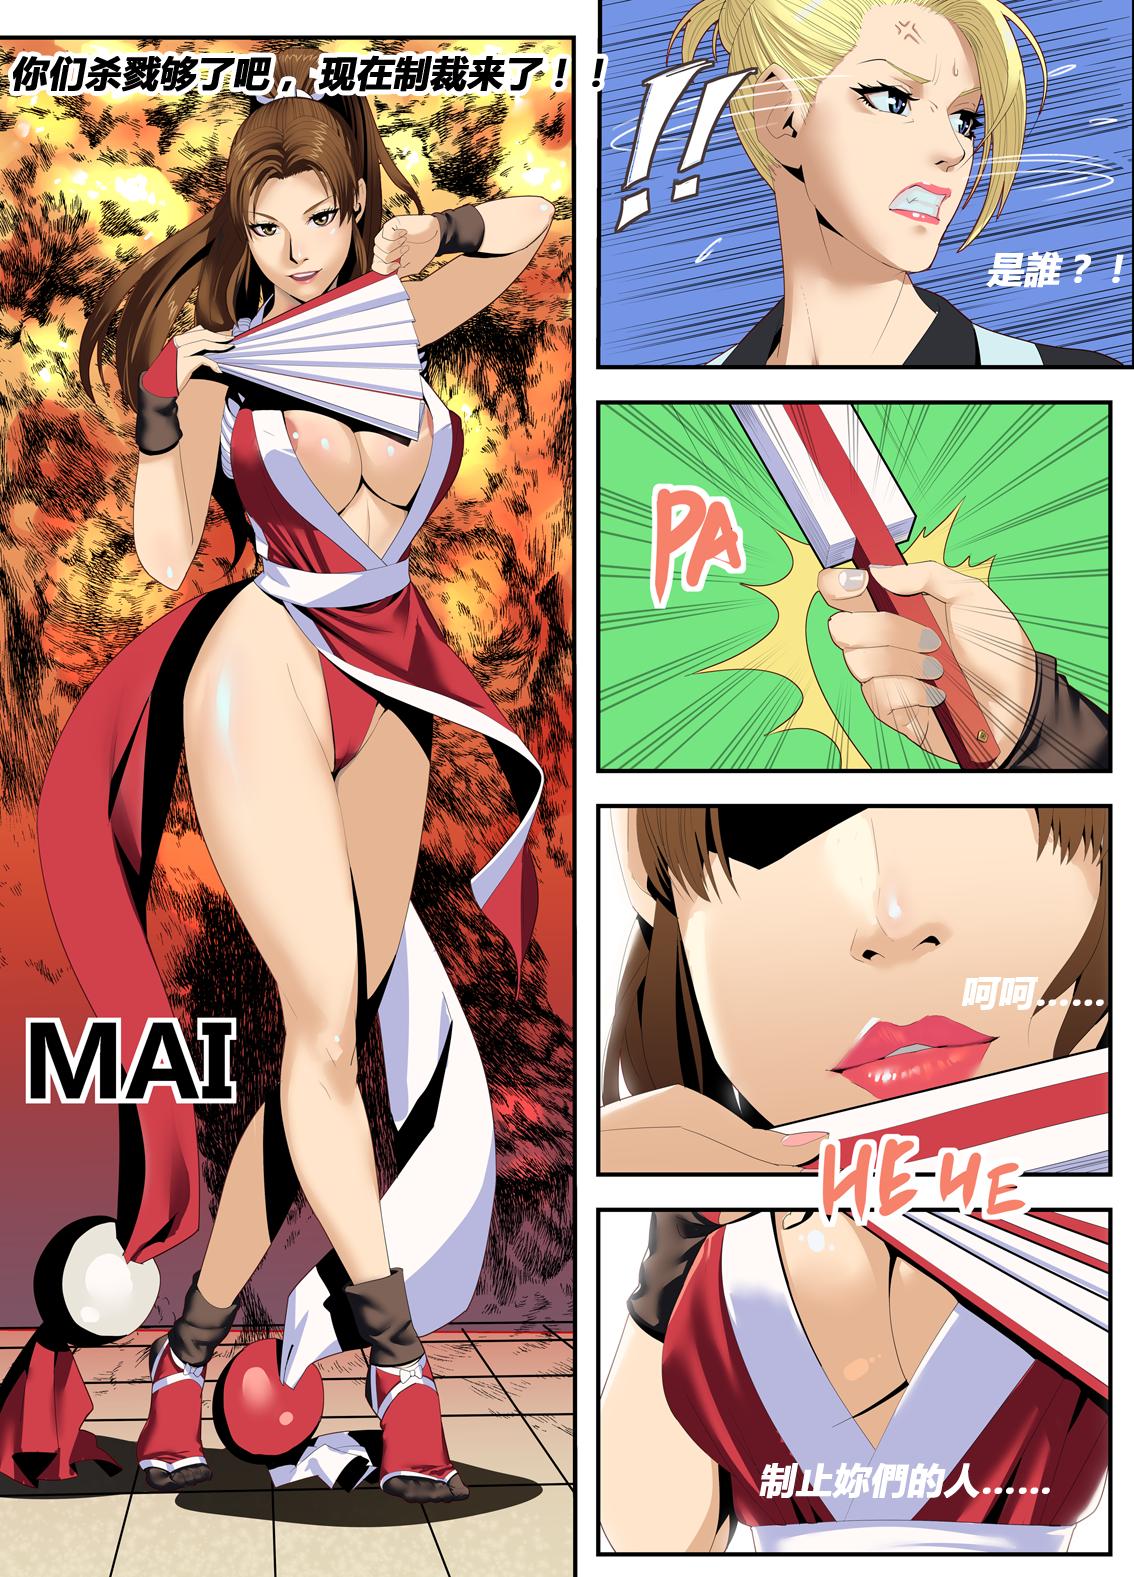 The Lust of Mai Shiranui 4